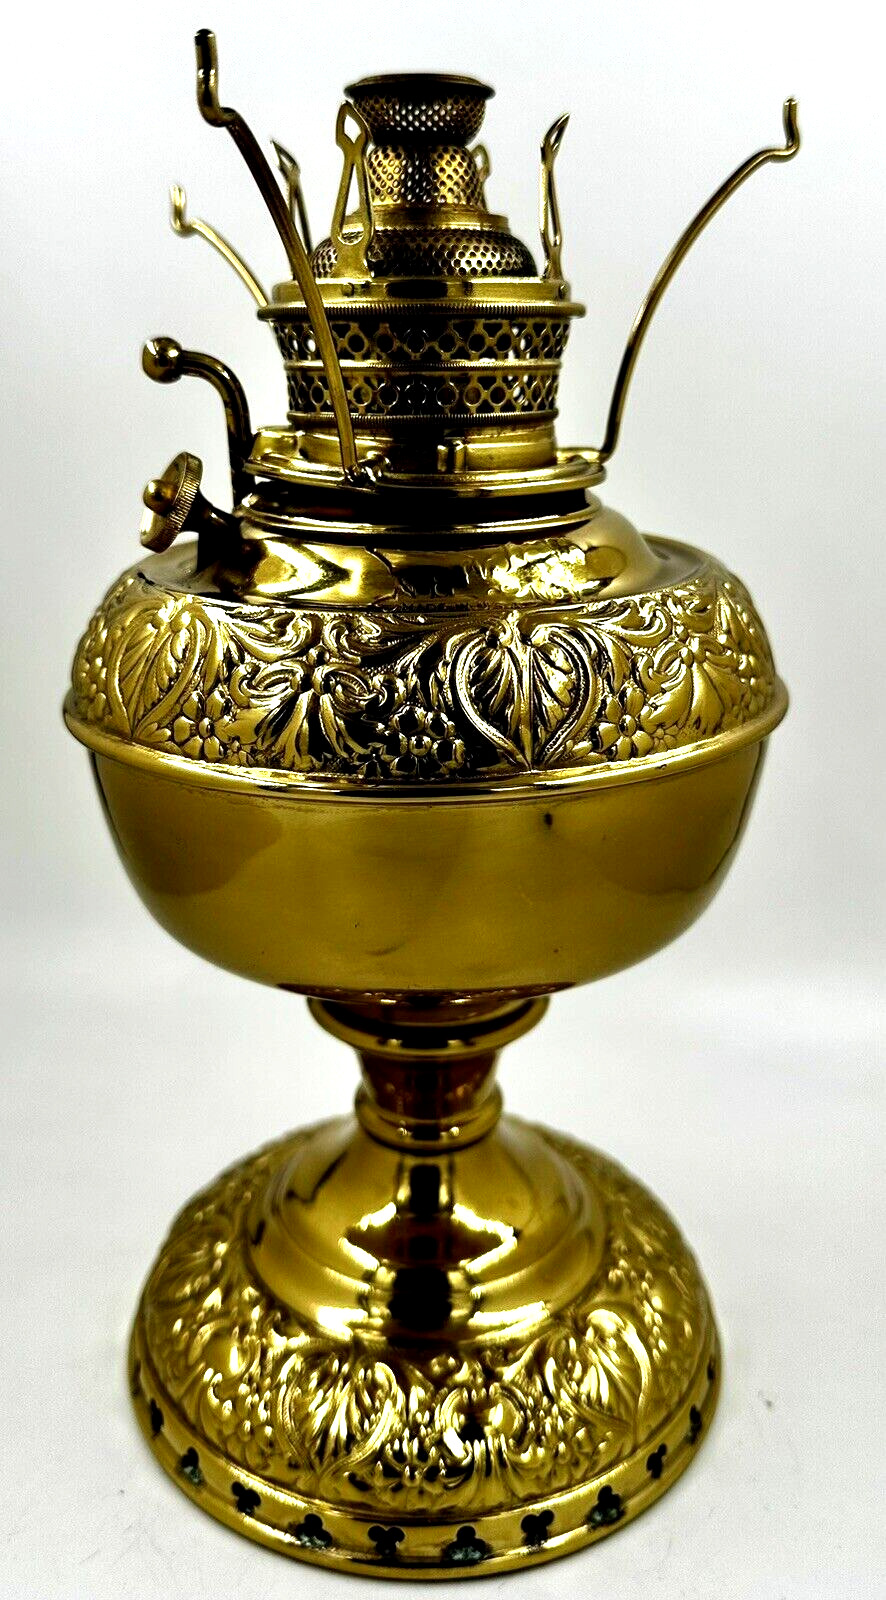 Antique Embossed Brass NEW JUNO Kerosene Oil Lamp w/ Flame Spreader, Burner 1893